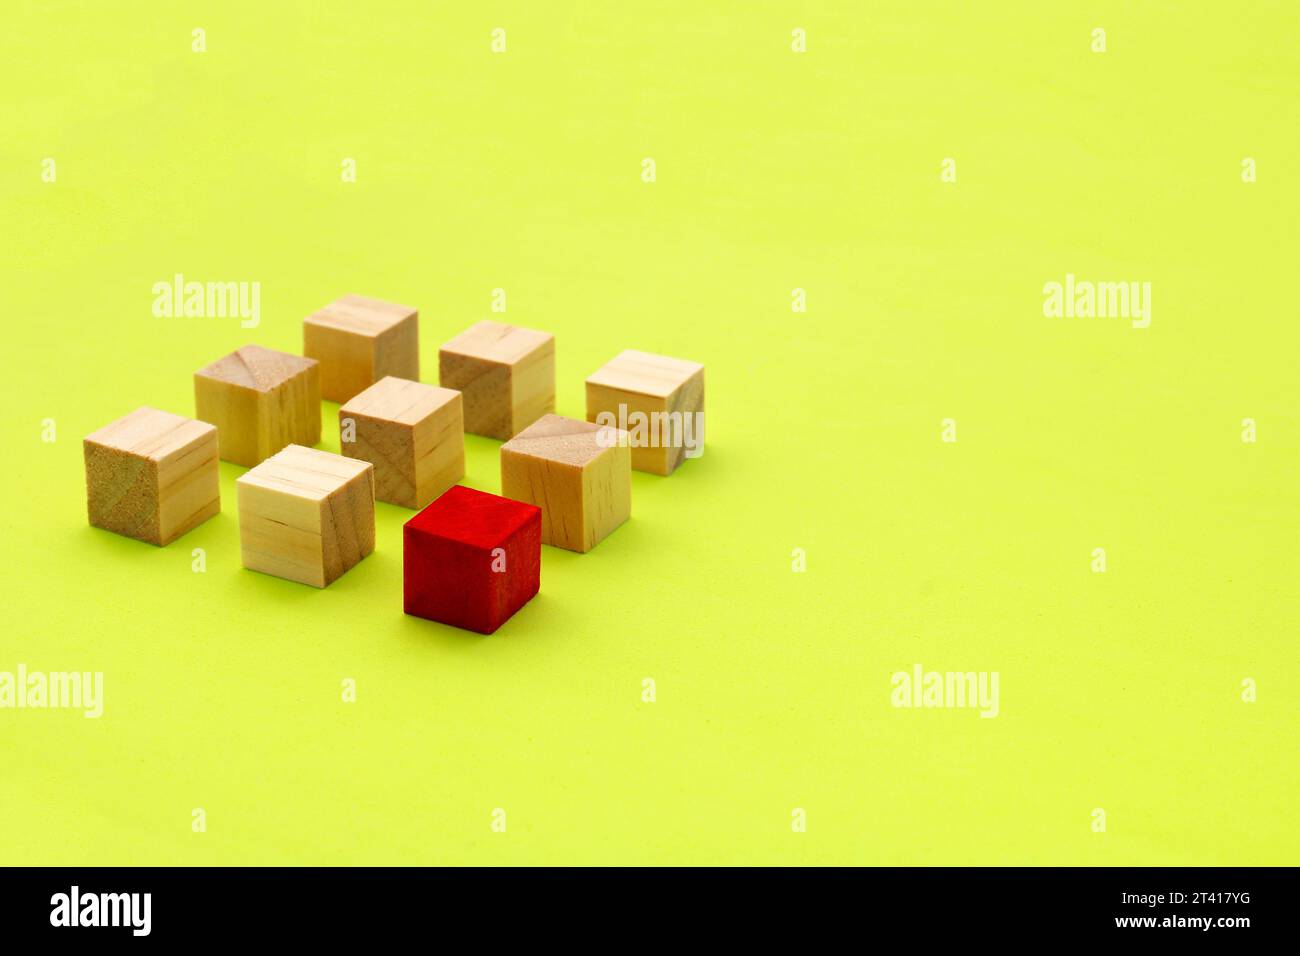 Cube en bois rouge devant un groupe de cubes alignés Banque D'Images